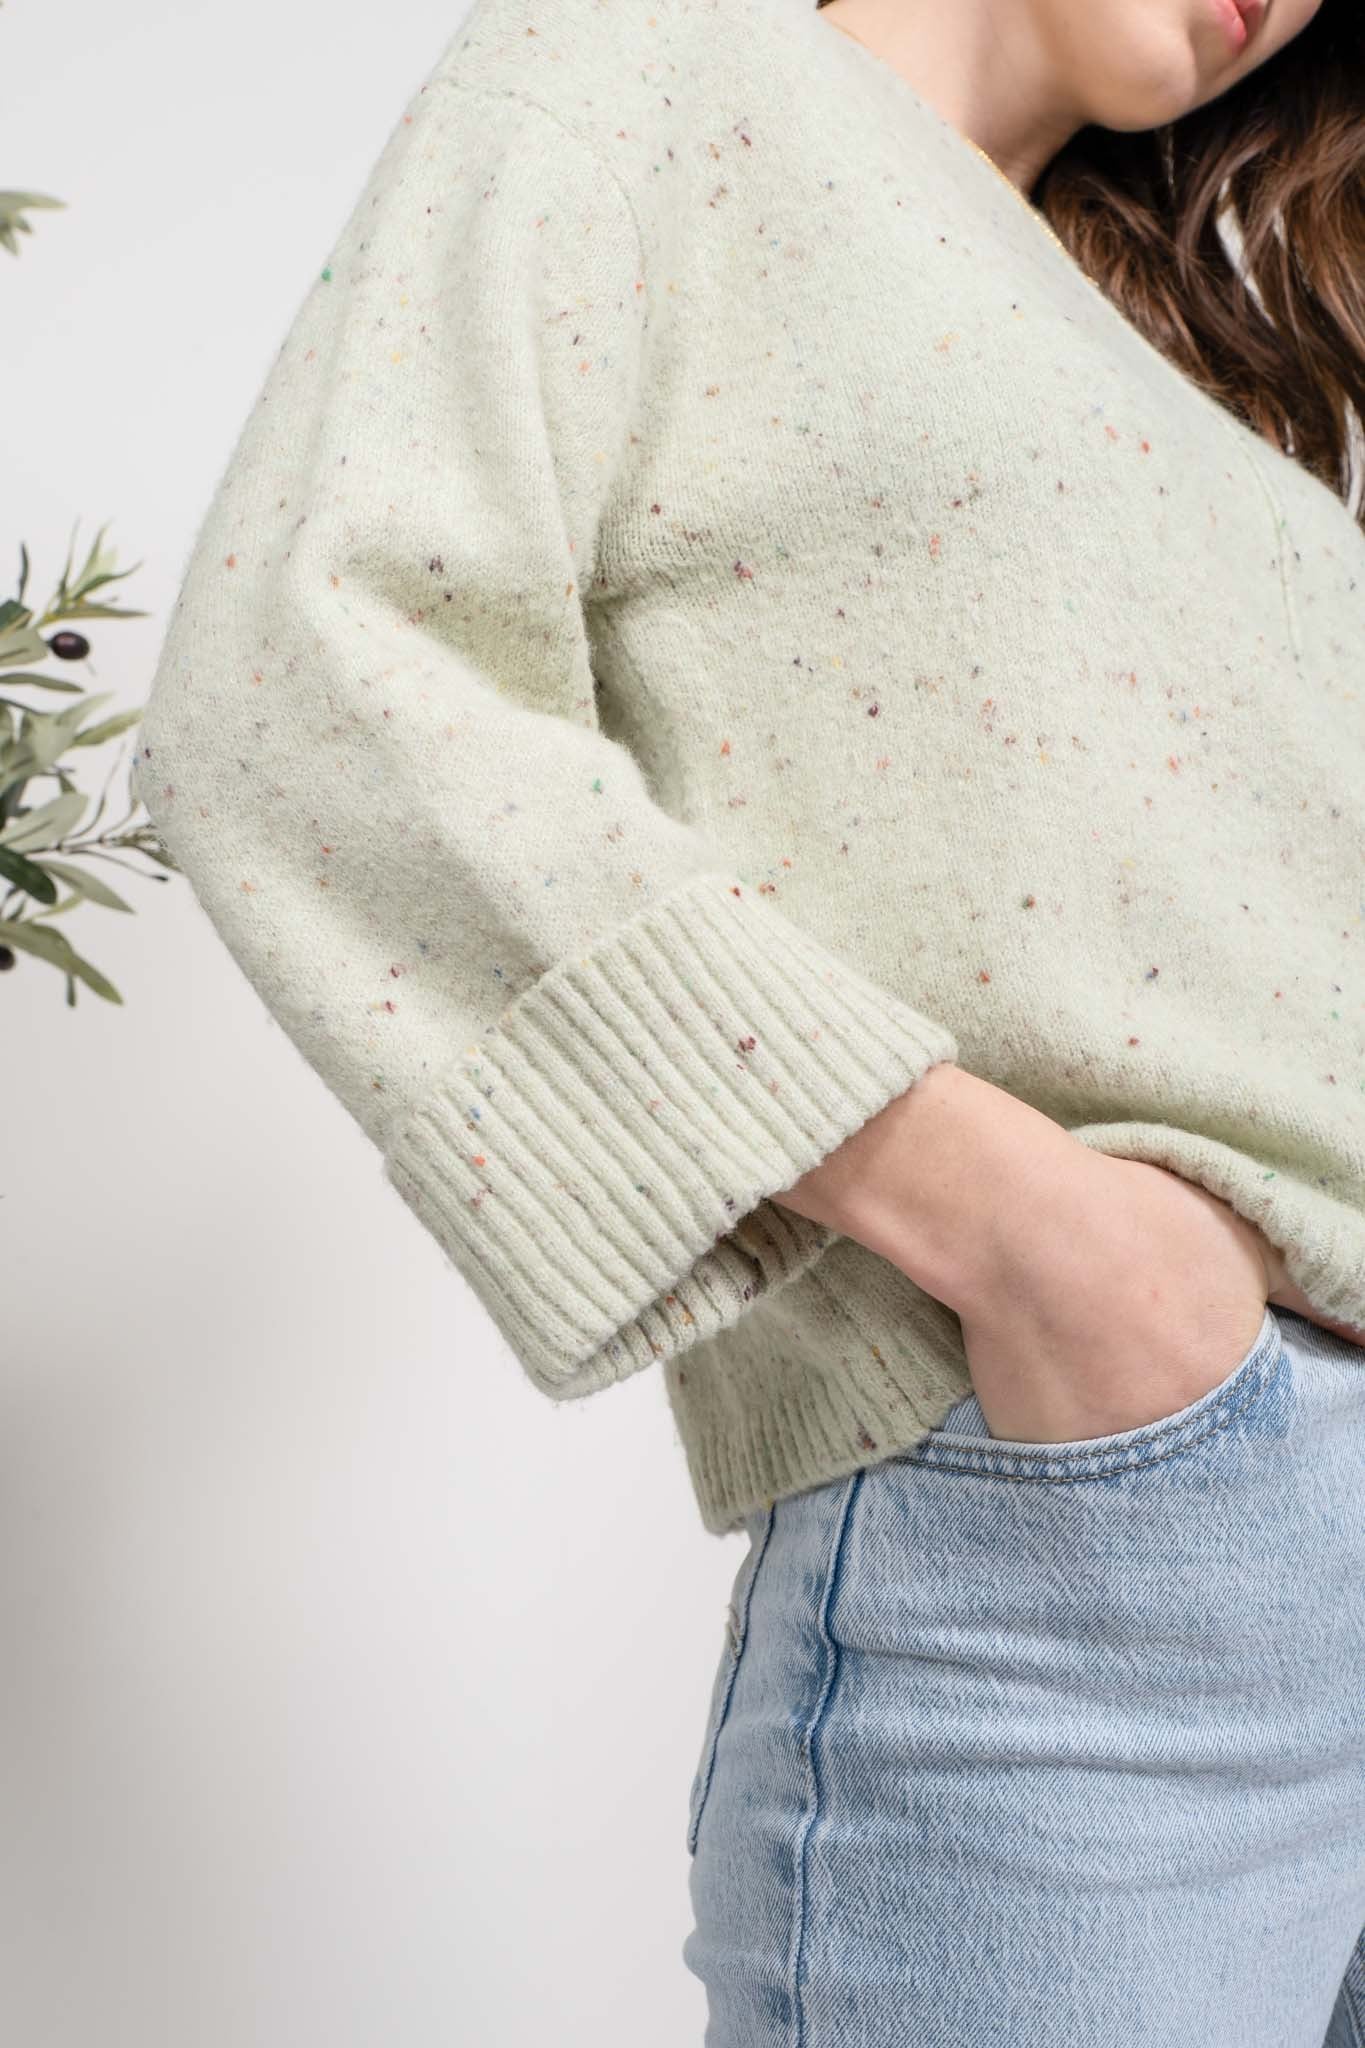 The Ella Confetti Cropped Sweater